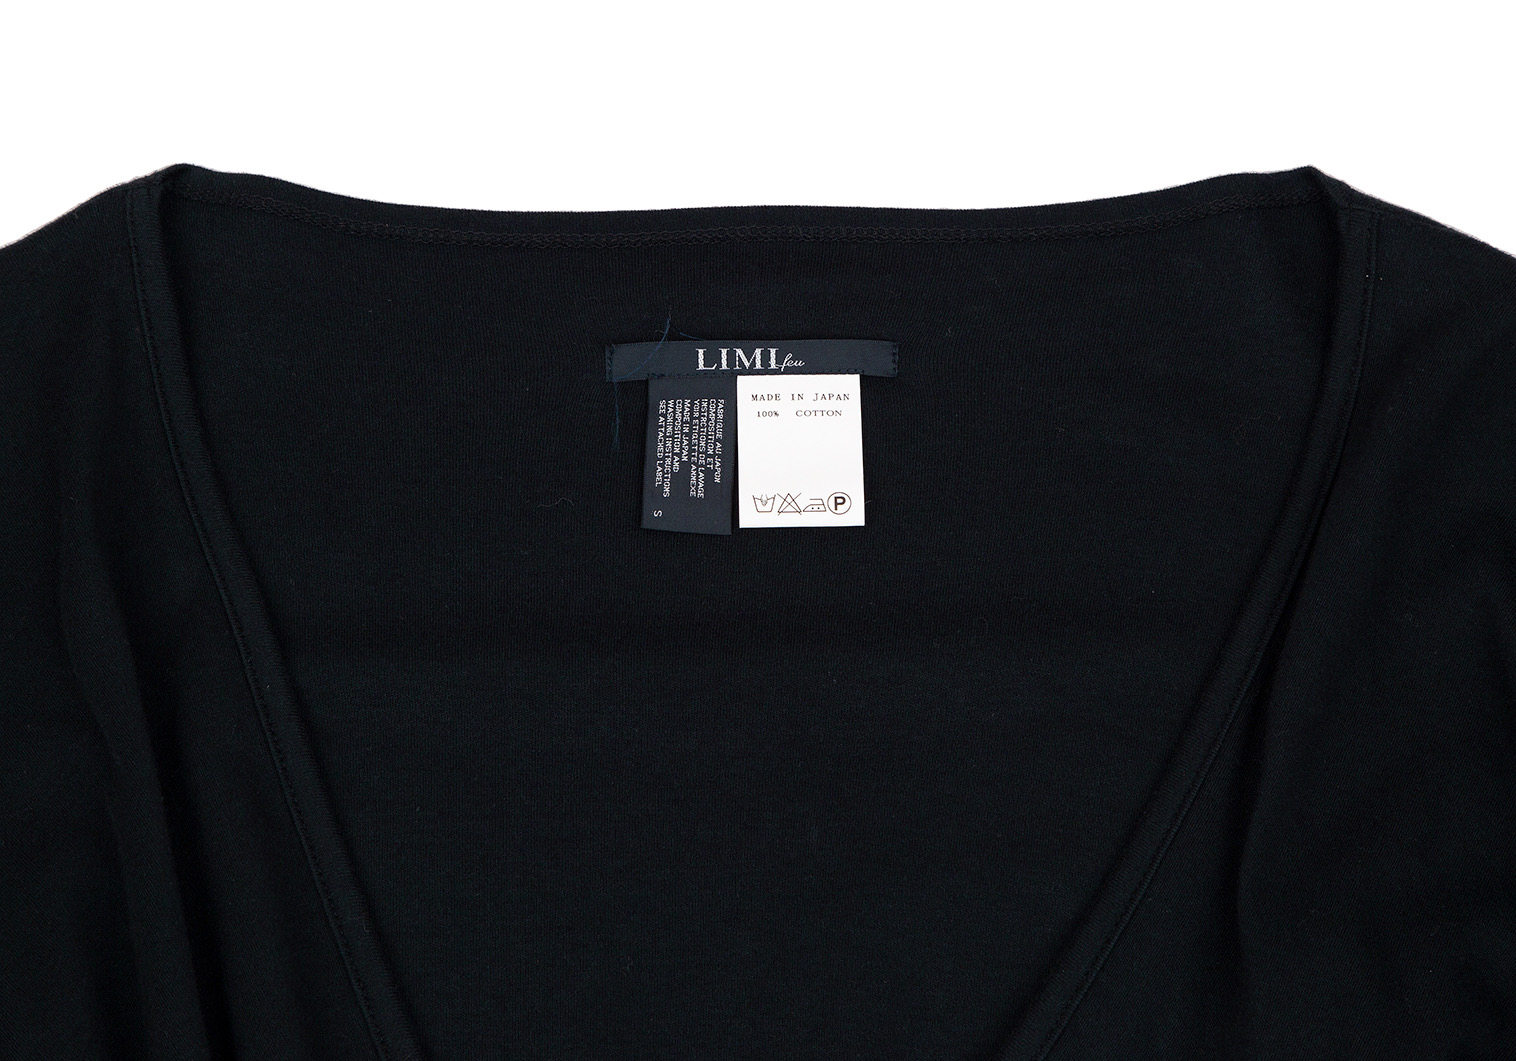 トップス Tシャツ/カットソー(半袖/袖なし) 2021新商品 LIMI feu 20SS コットン フロントストラップ カットソー 黒 